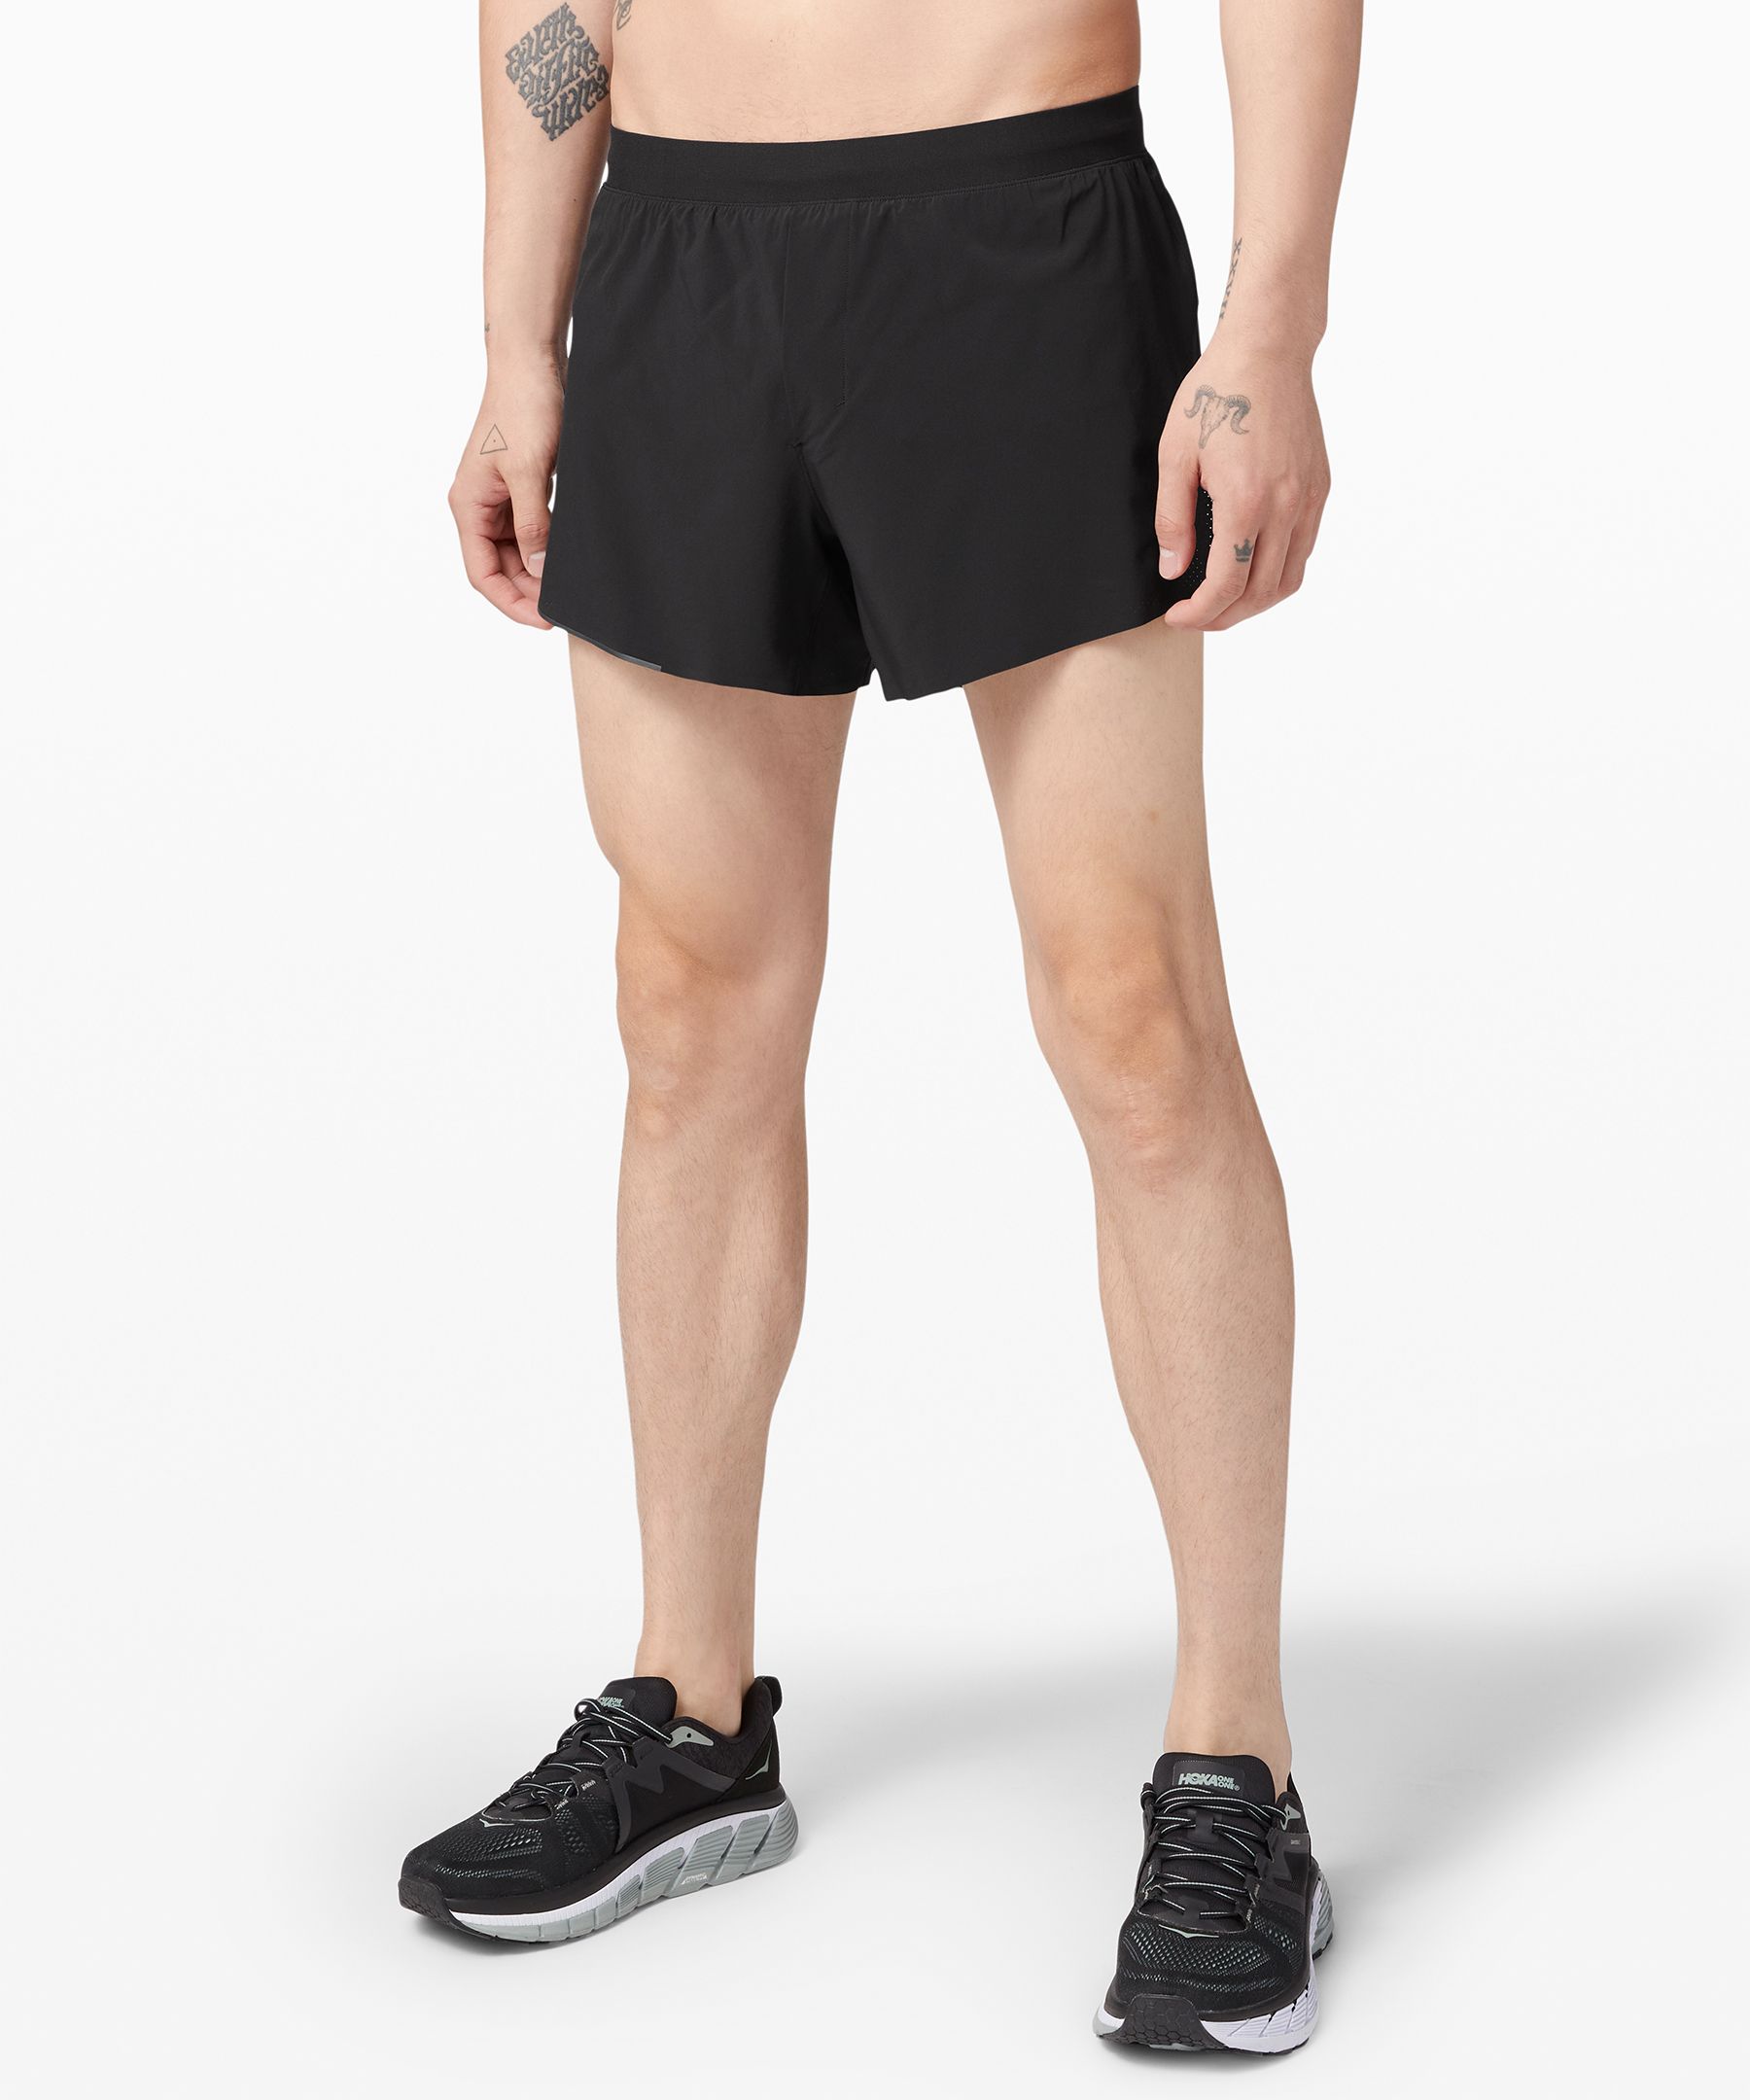 lululemon perforated shorts